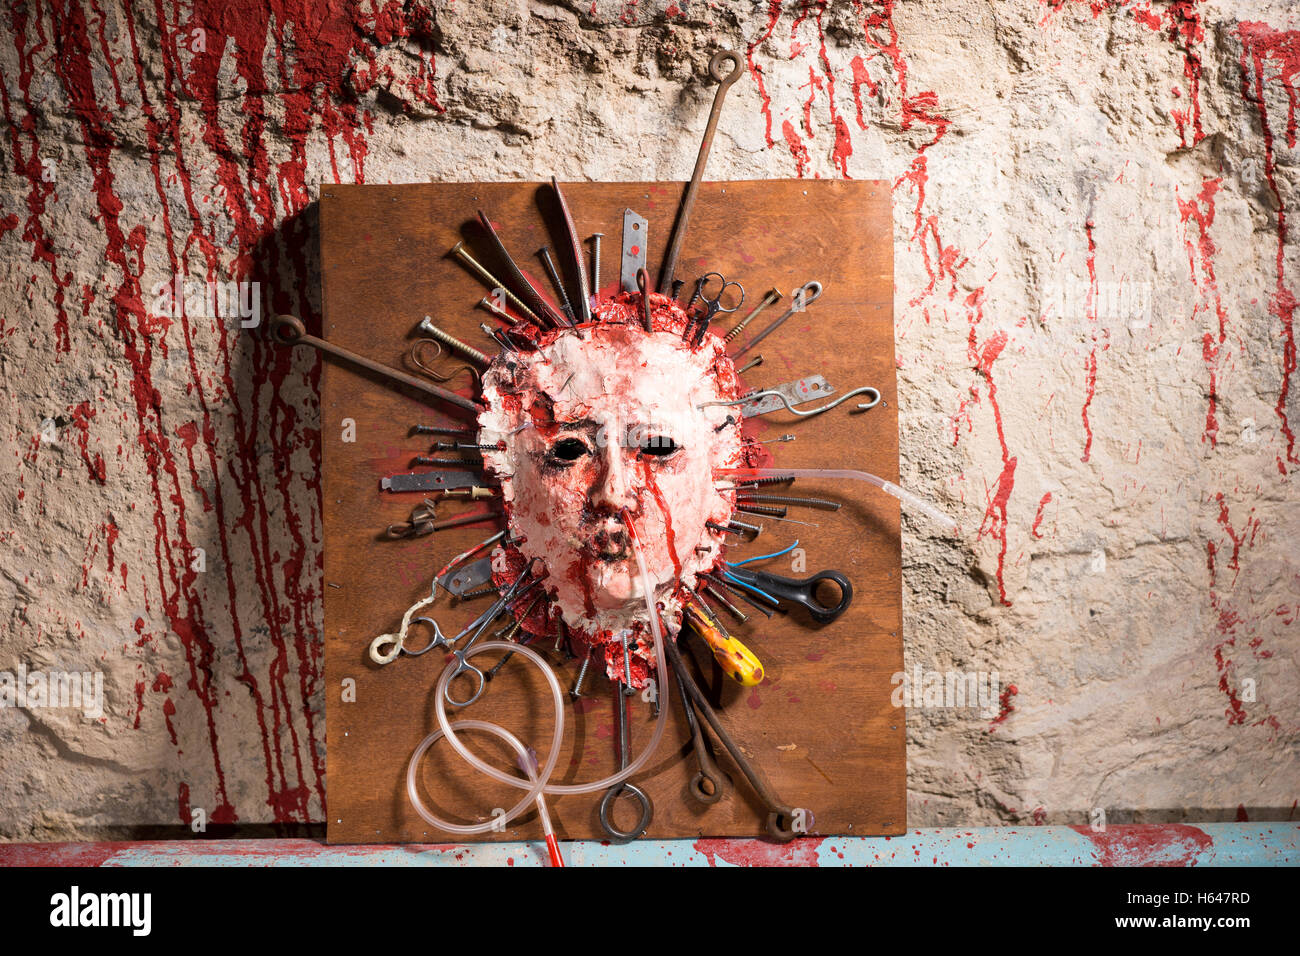 Dunkelhäutigen blutiges Gesicht einer Person auf einem Holzbrett mit sortierten scharfen Waffen zusammen mit Blut bespritzt Wand in einem Halloween-Horror-Konzept gedehnt geöffnet. Stockfoto